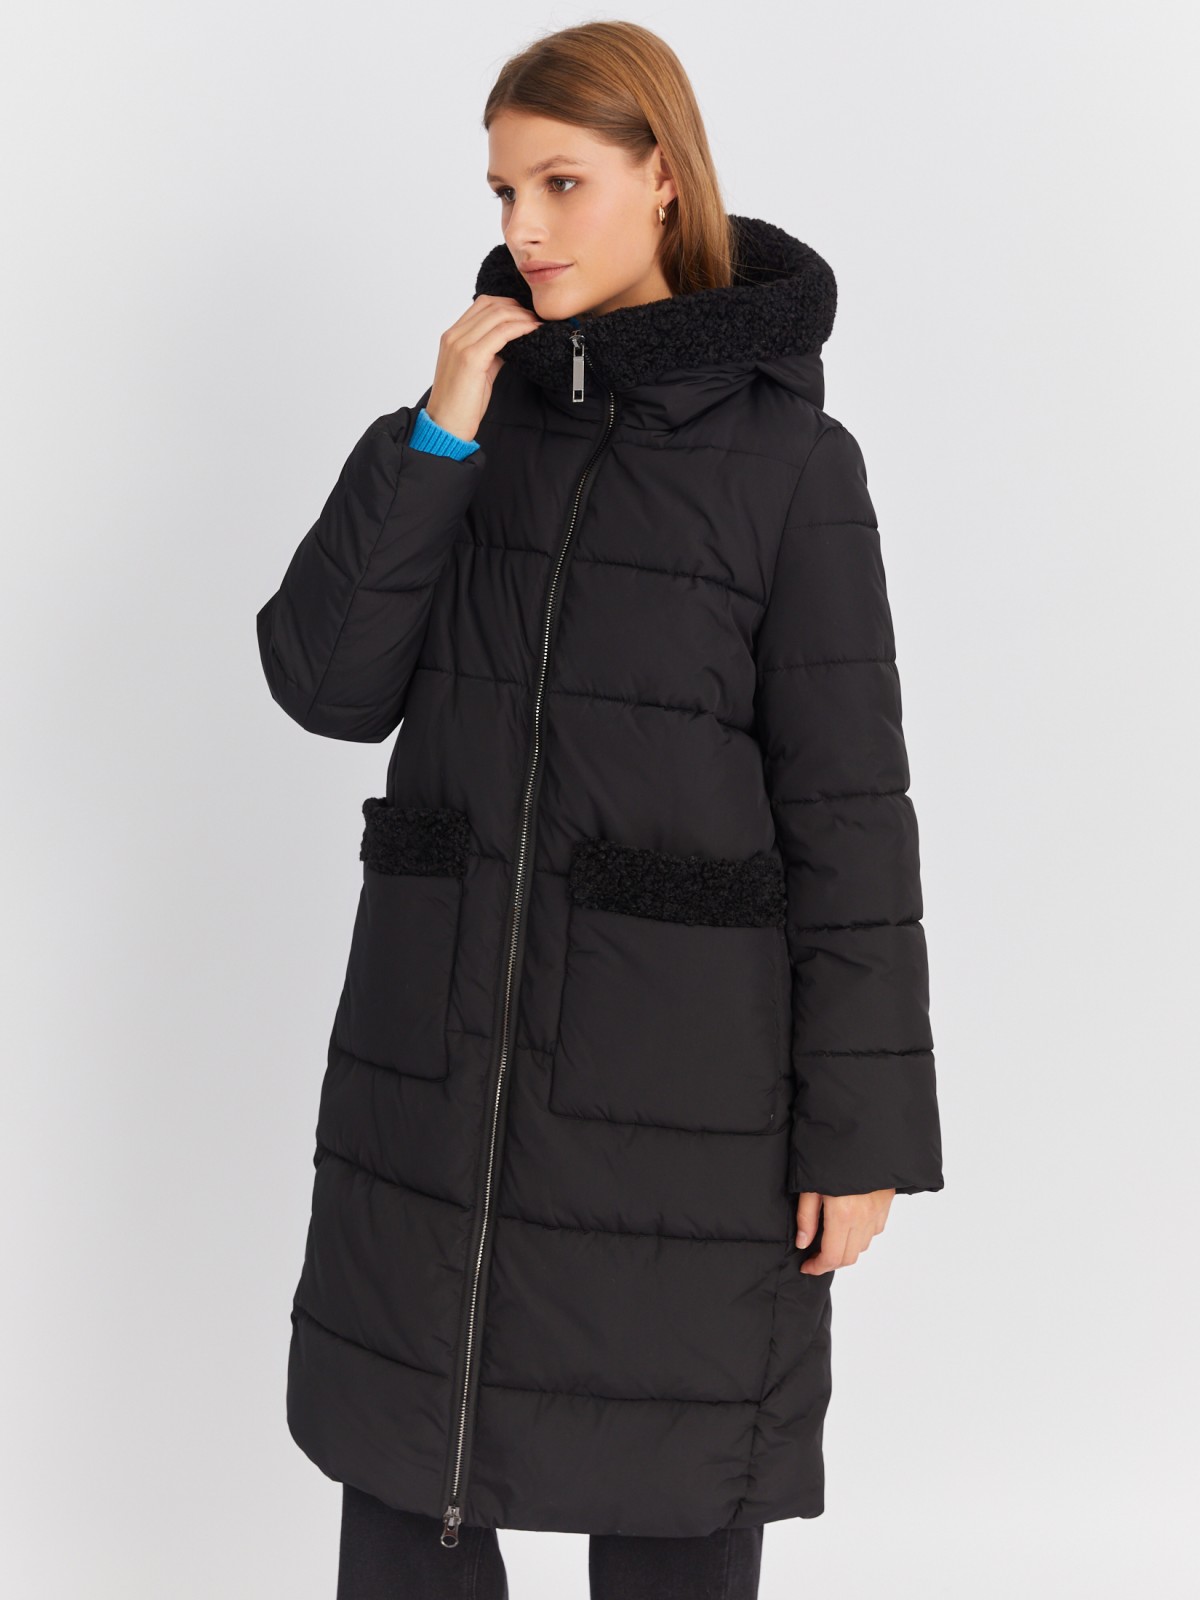 Тёплая куртка-пальто с капюшоном и отделкой из экомеха zolla 022425276044, цвет черный, размер M - фото 4